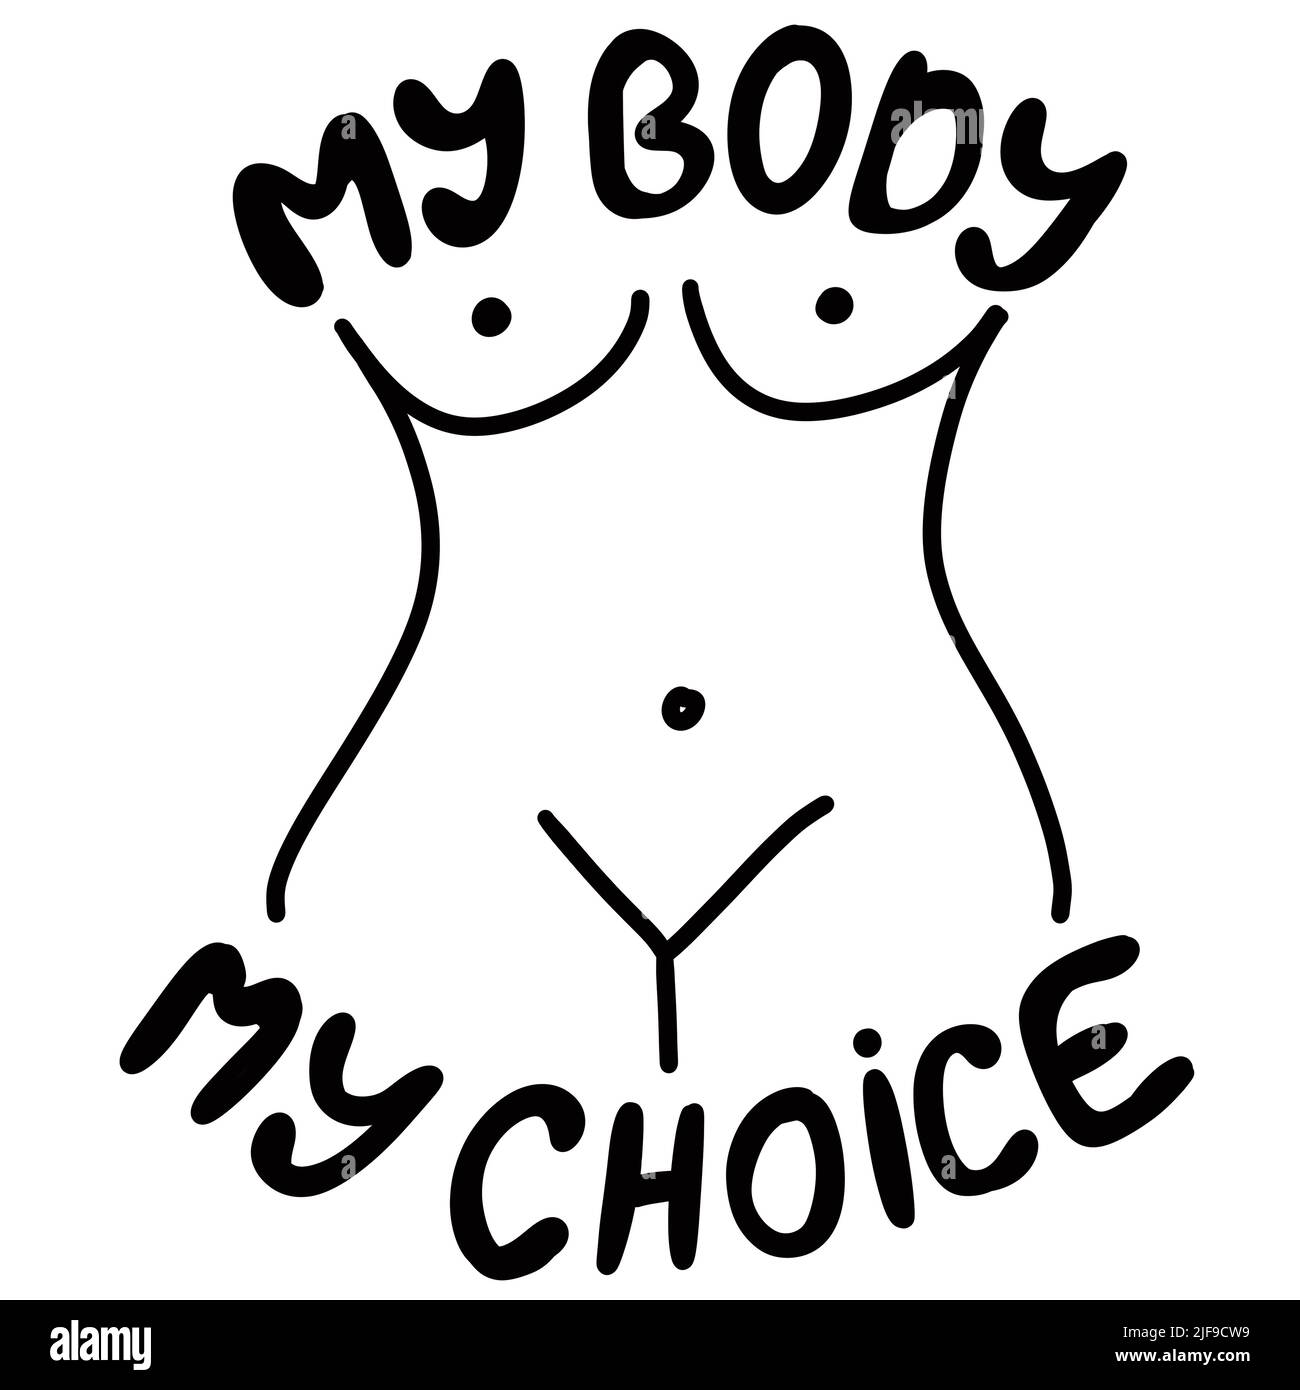 Mein Körper meine Wahl Handgezeichnete Illustration mit Frauenkörper. Feminismus Aktivismus Konzept, reproduktive Abtreibungsrechte, Reihe V wade Design Stockfoto